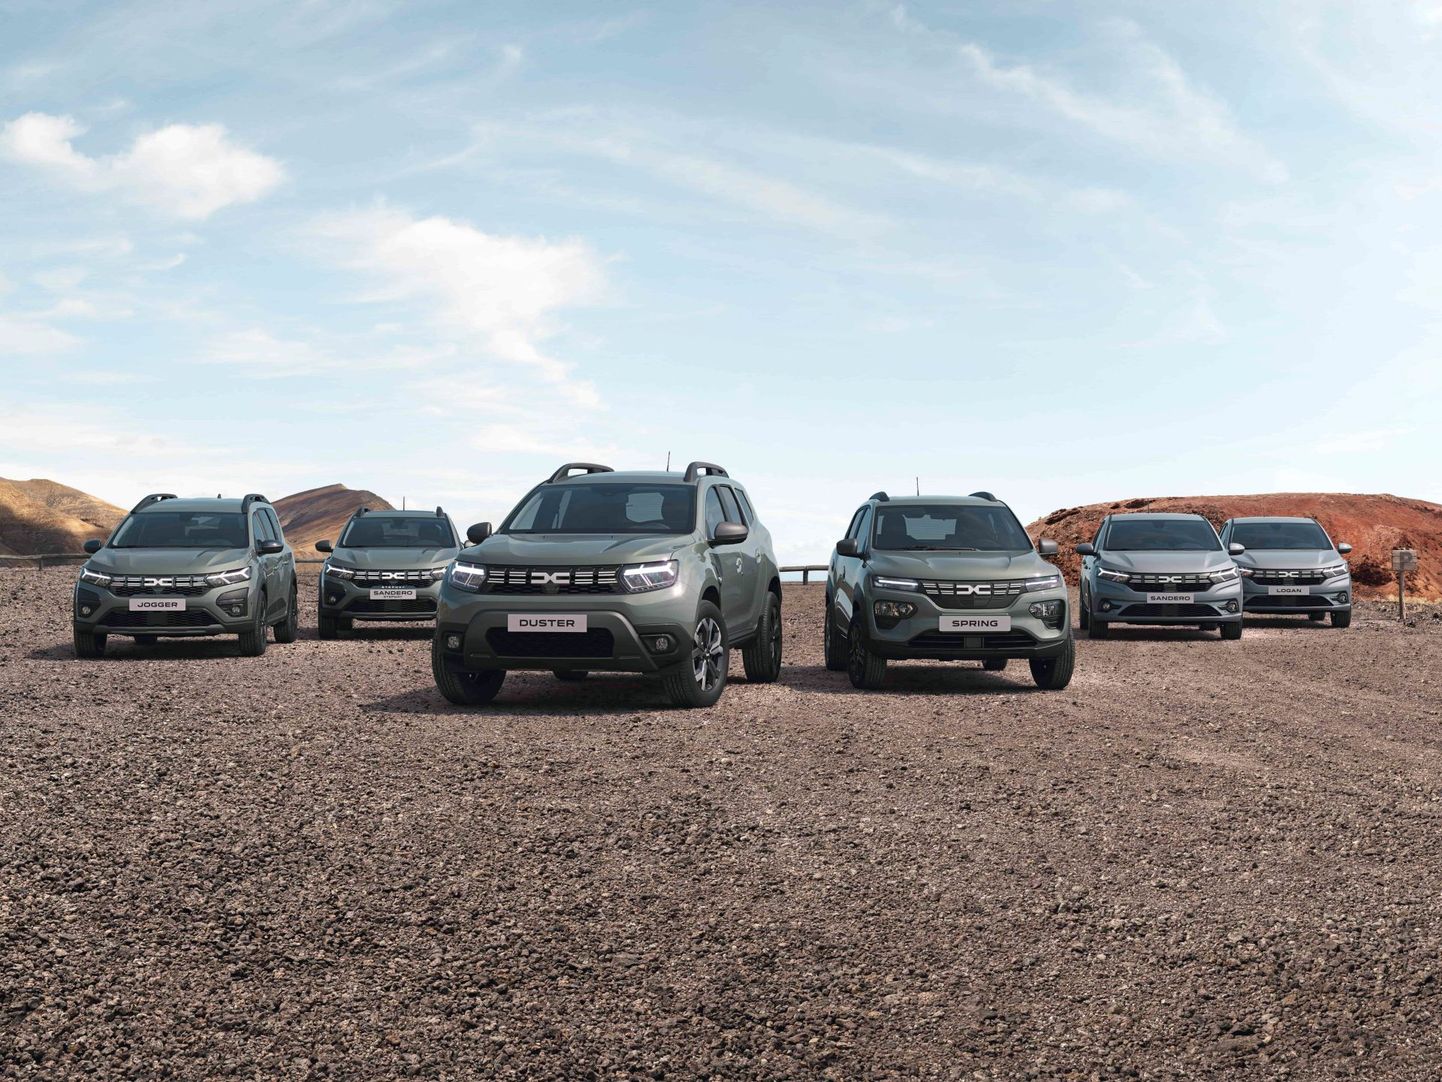 Dacia kõik mudelid saavad uue visuaalse identiteedi ja neid saab tellida alates homsest.